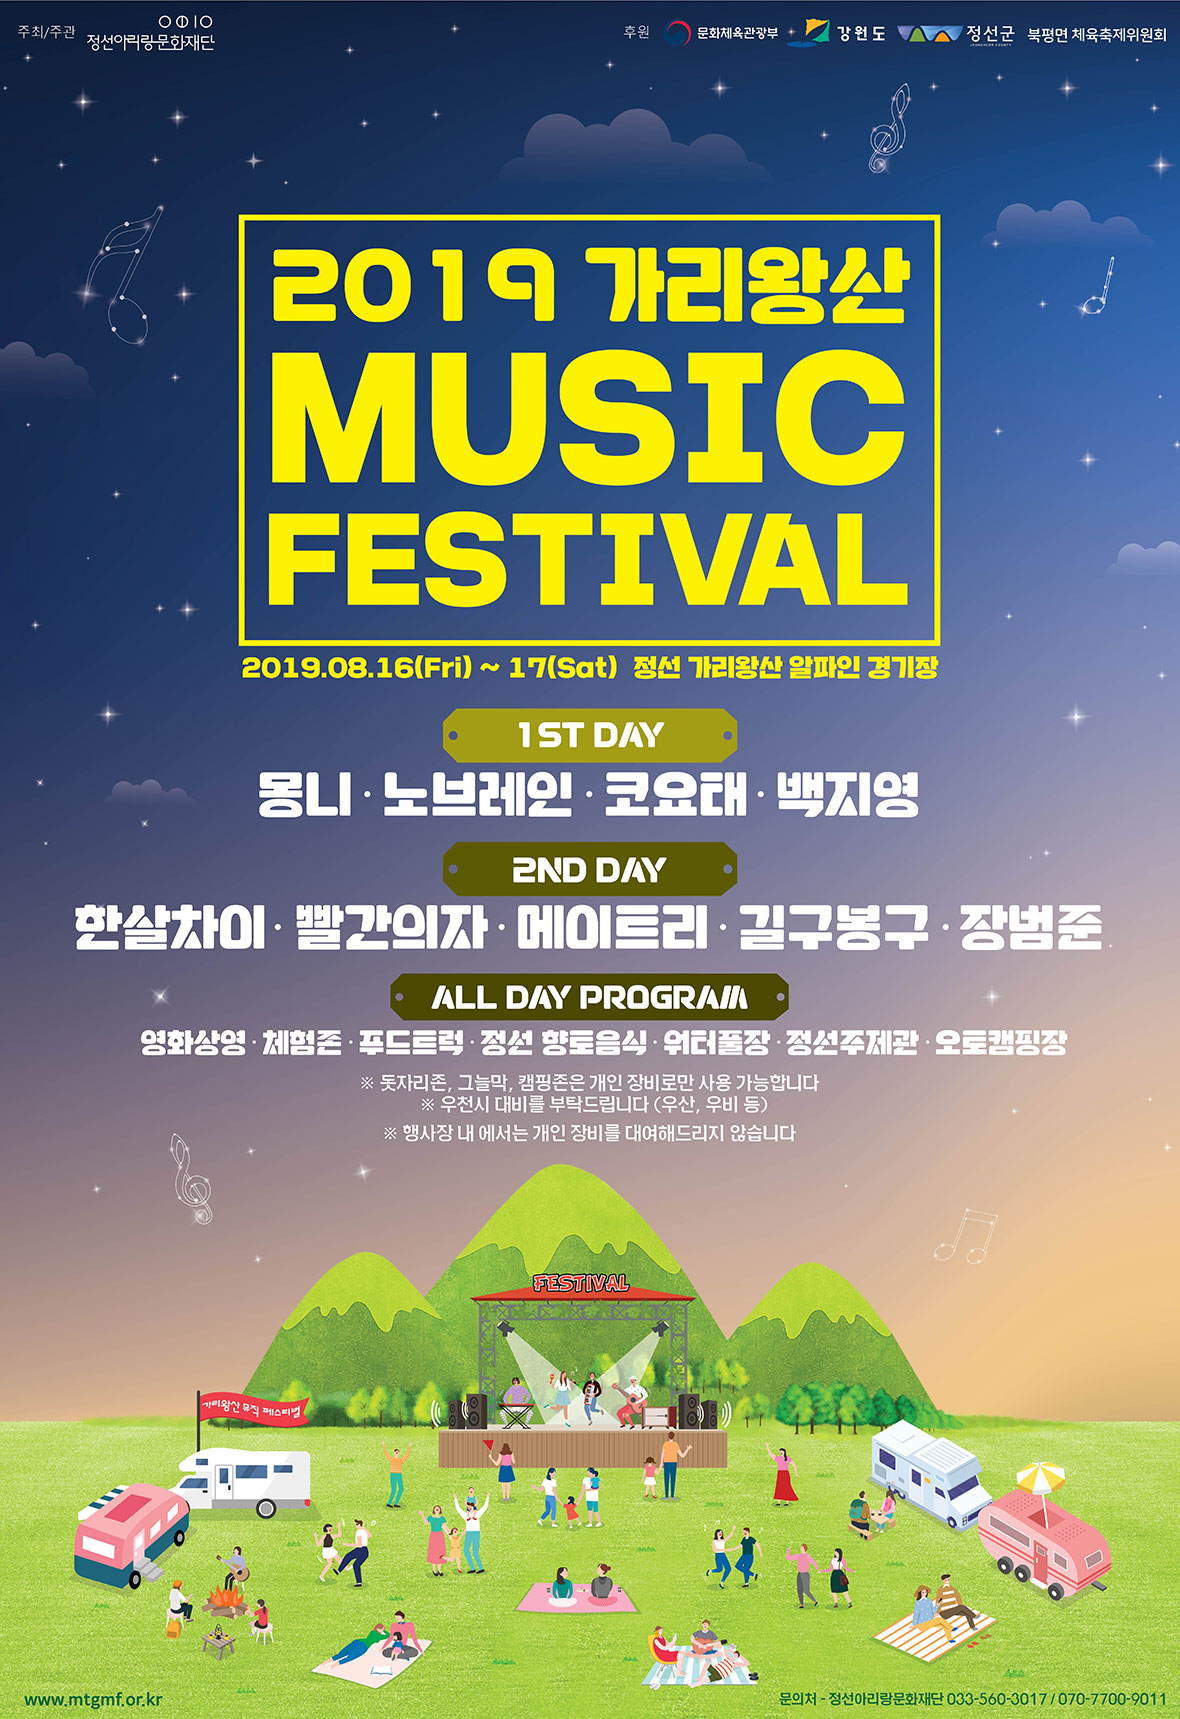 2019 가리왕산 music festival